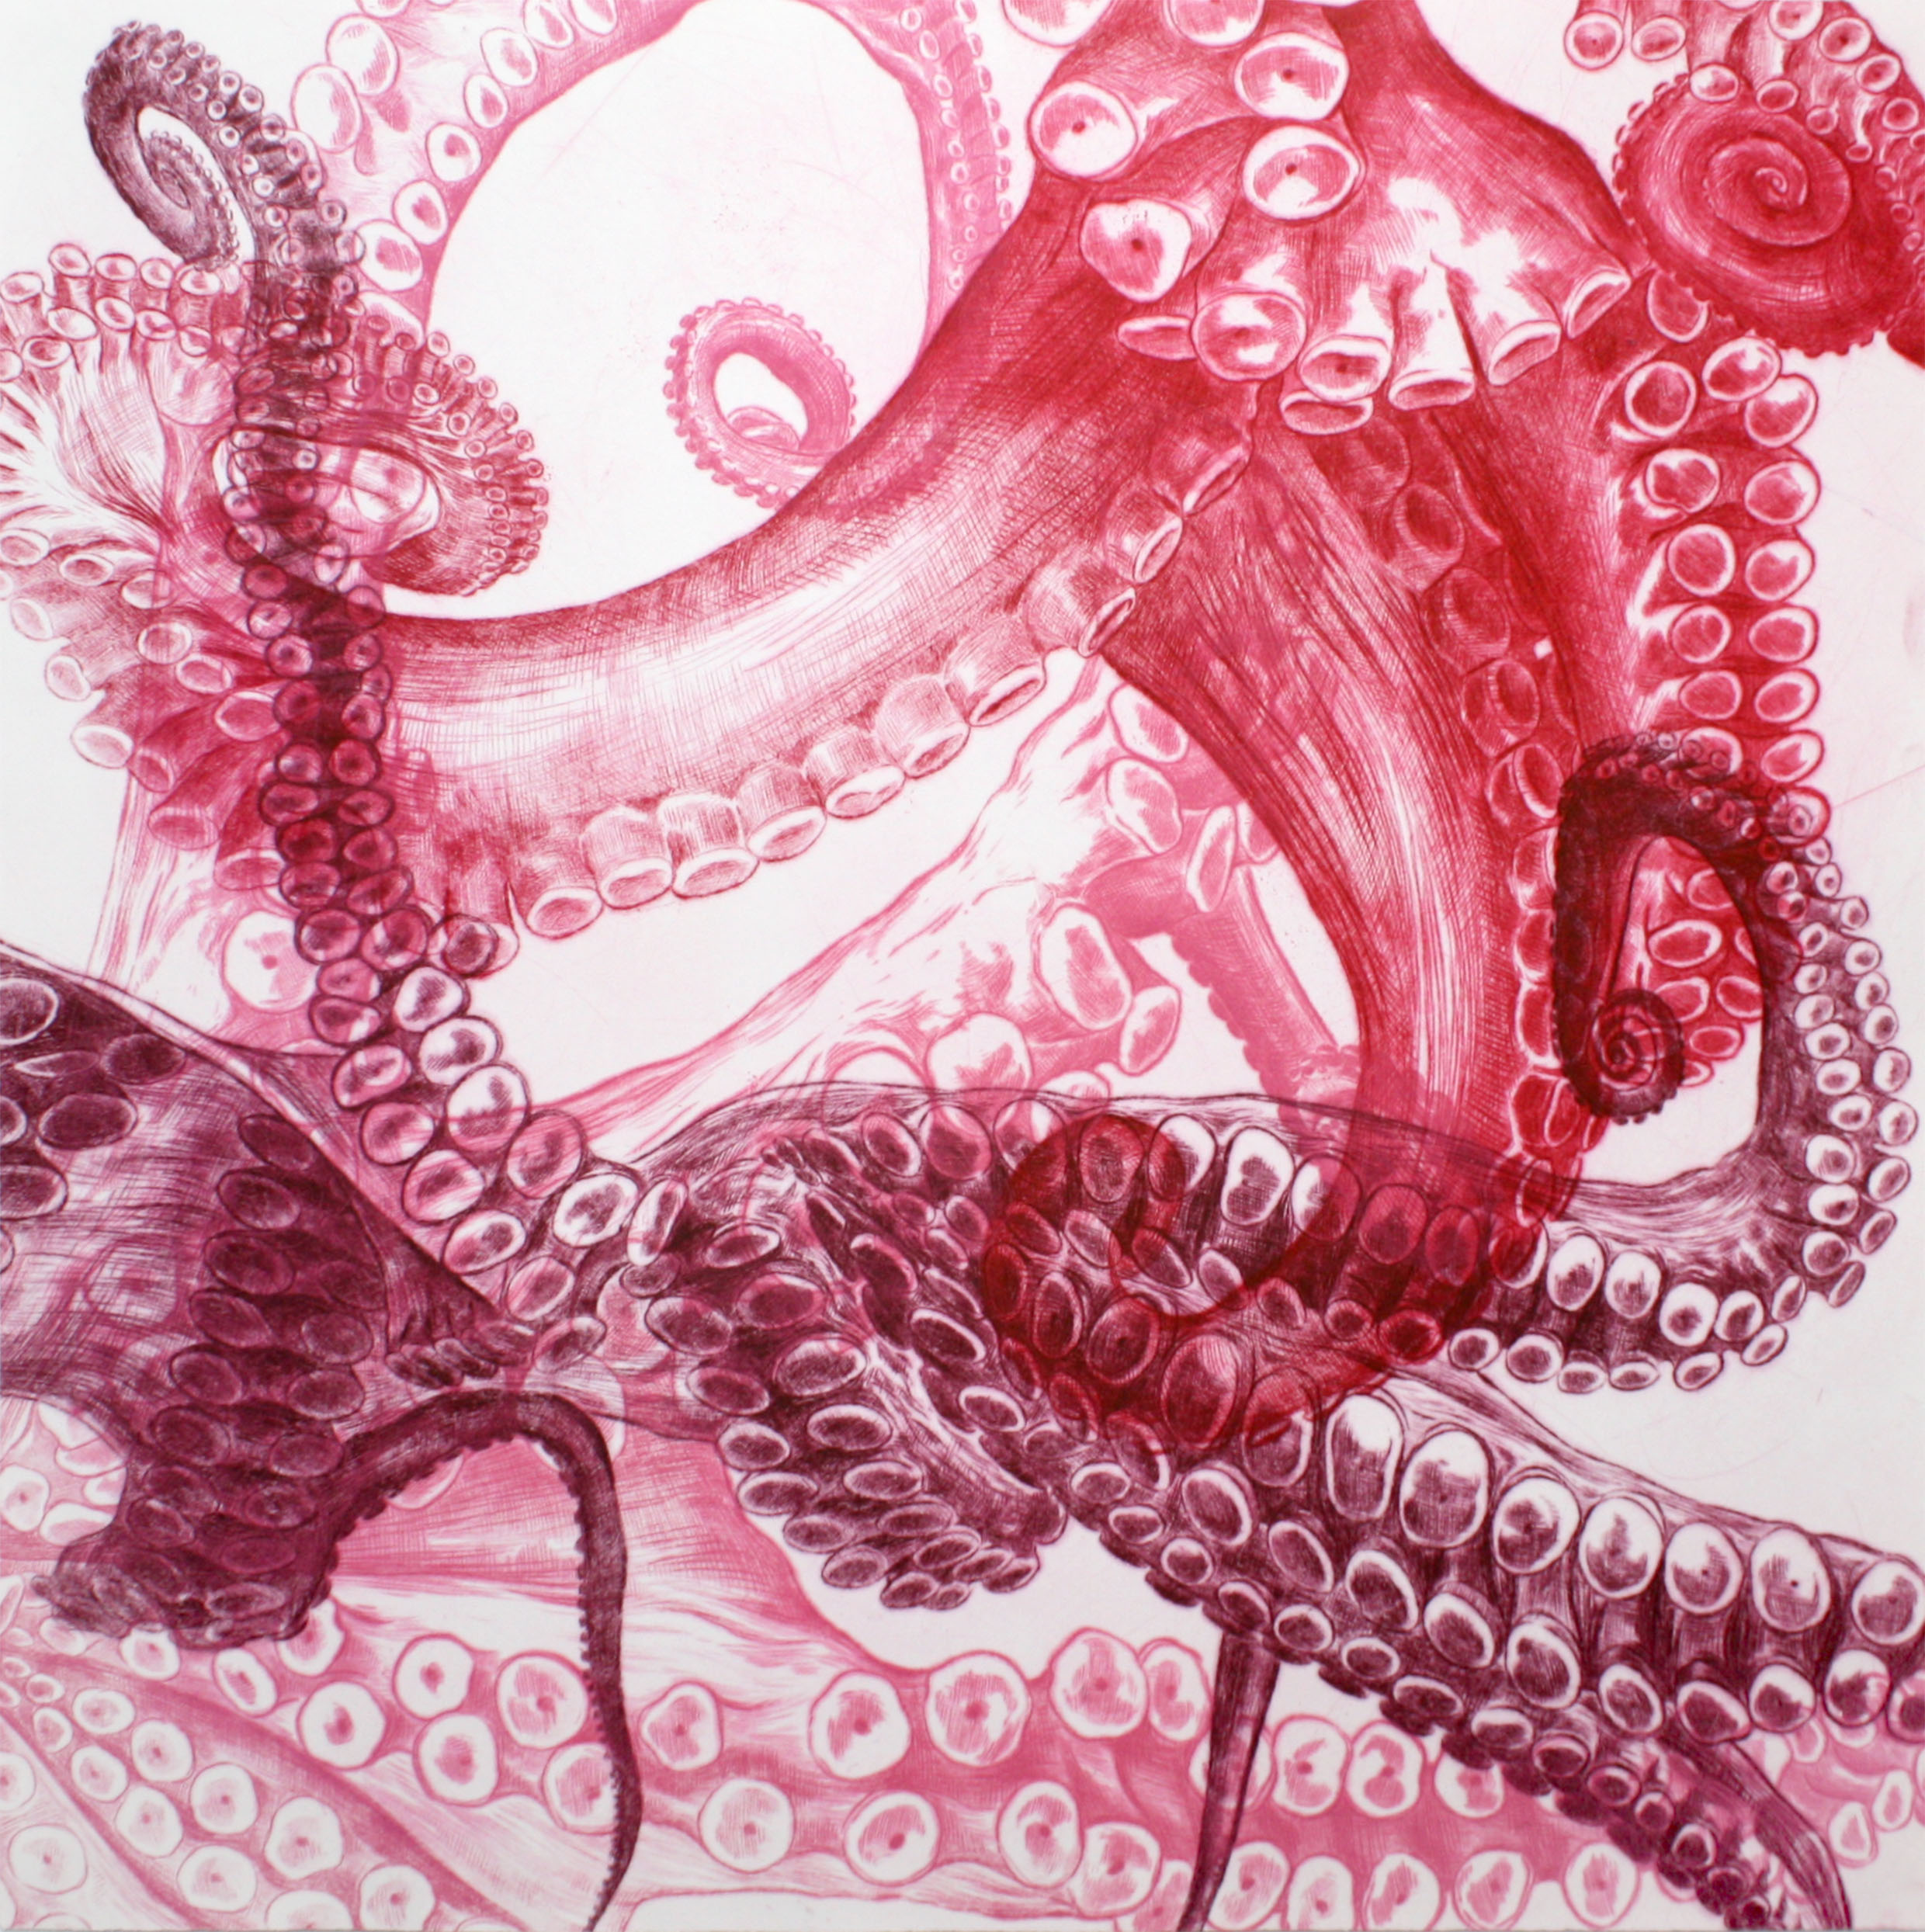 Octopus-roseLR